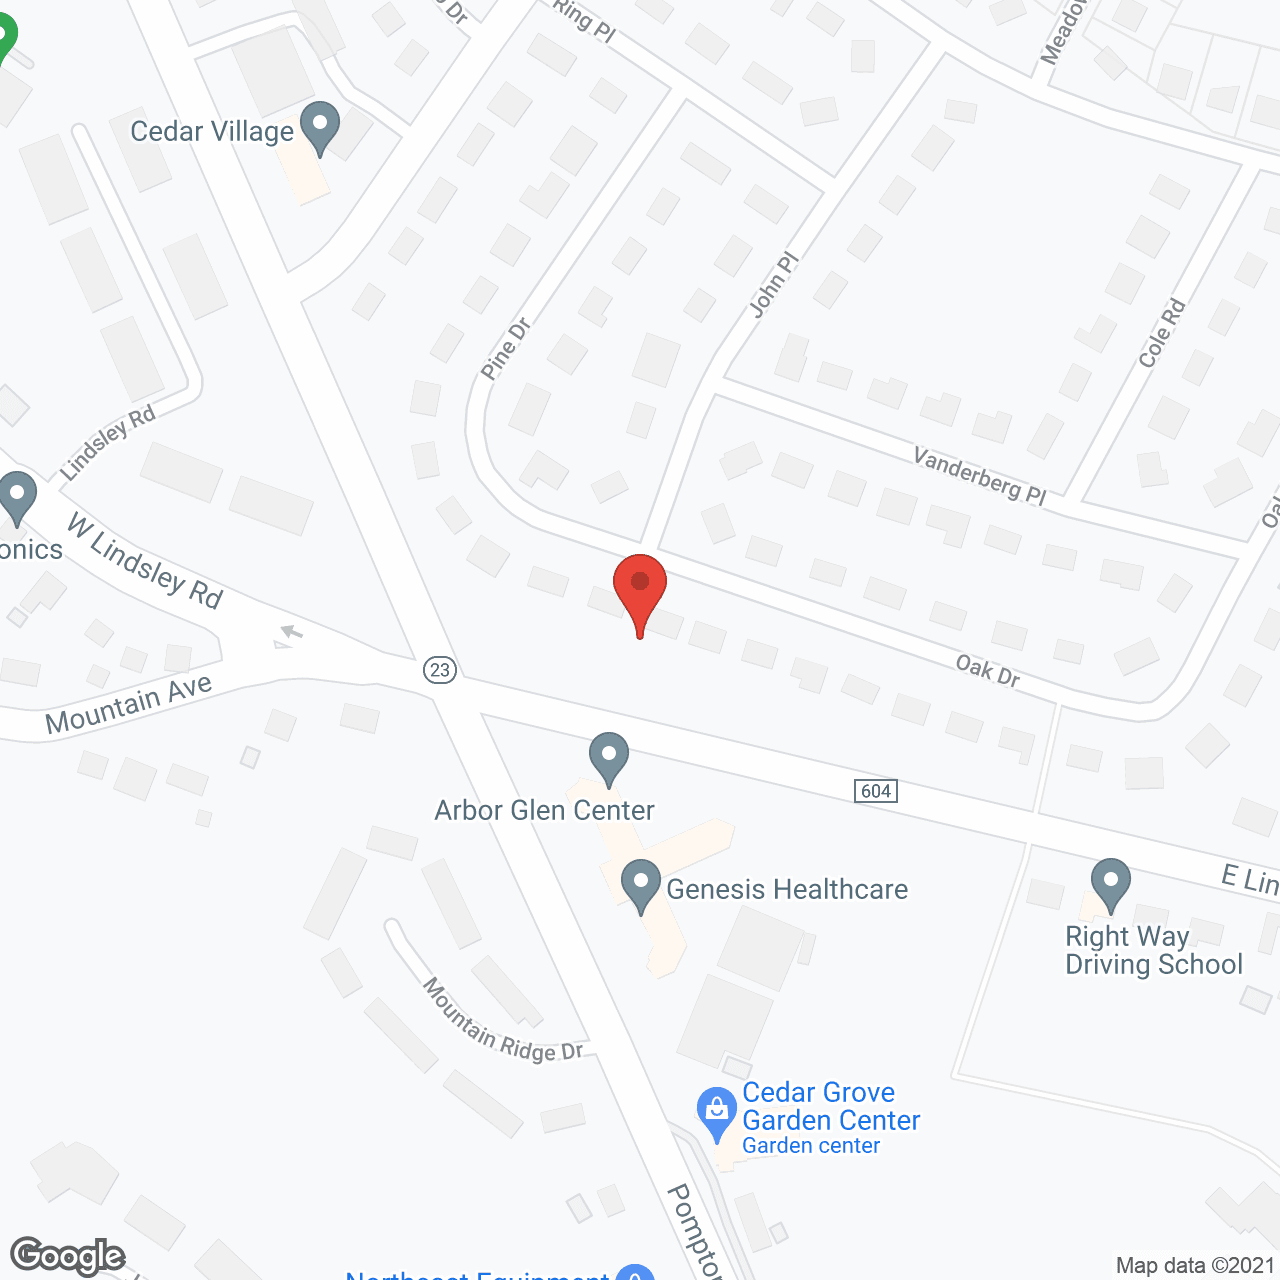 Arbor Glen Center in google map